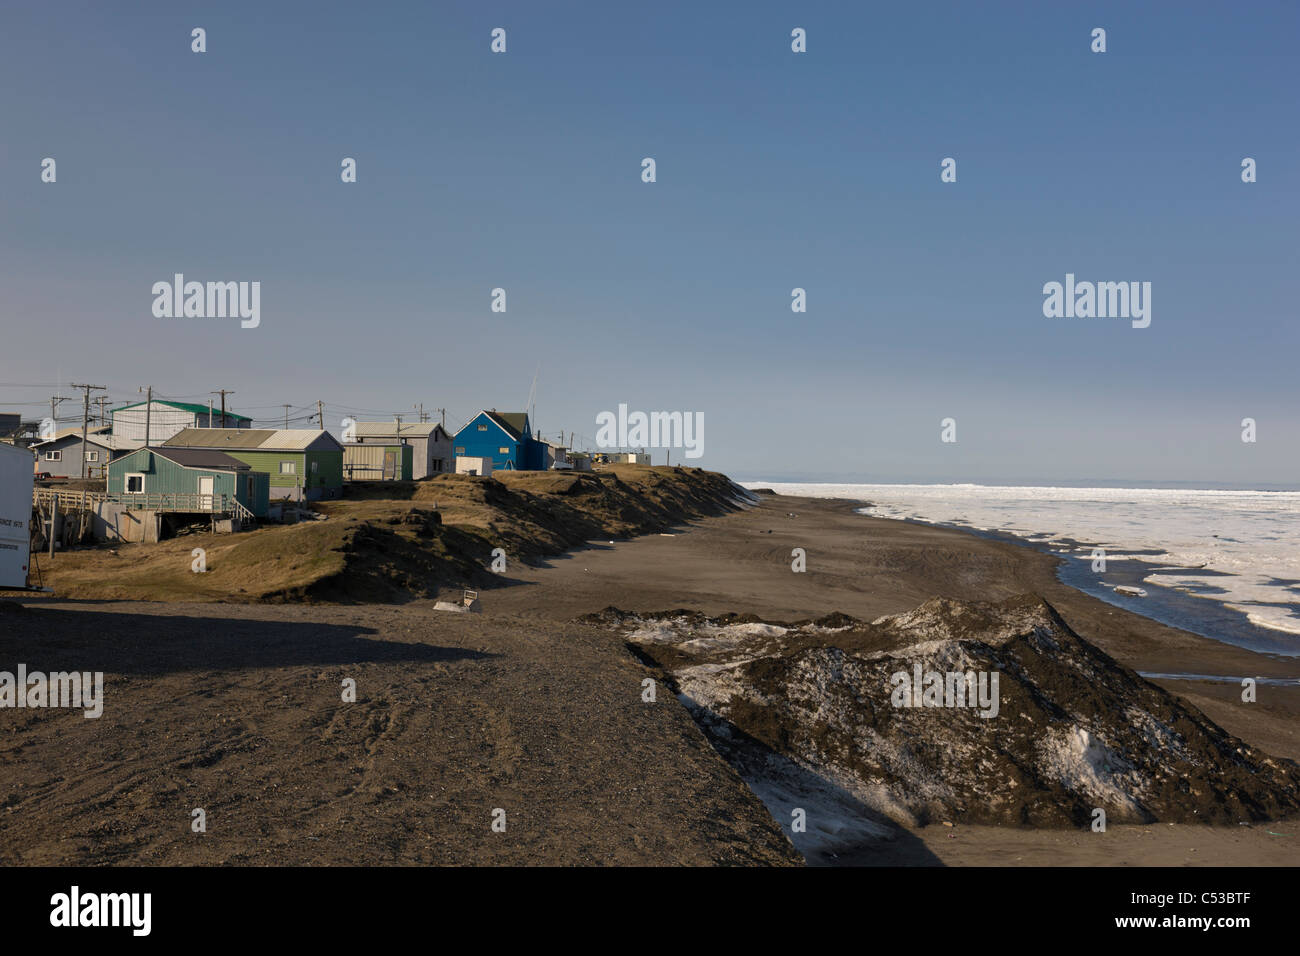 Vue sur le nord de la plupart des villes des États-Unis, Barrow, situé au large de la mer de Tchoukotka, dans l'océan Arctique, l'Alaska Banque D'Images